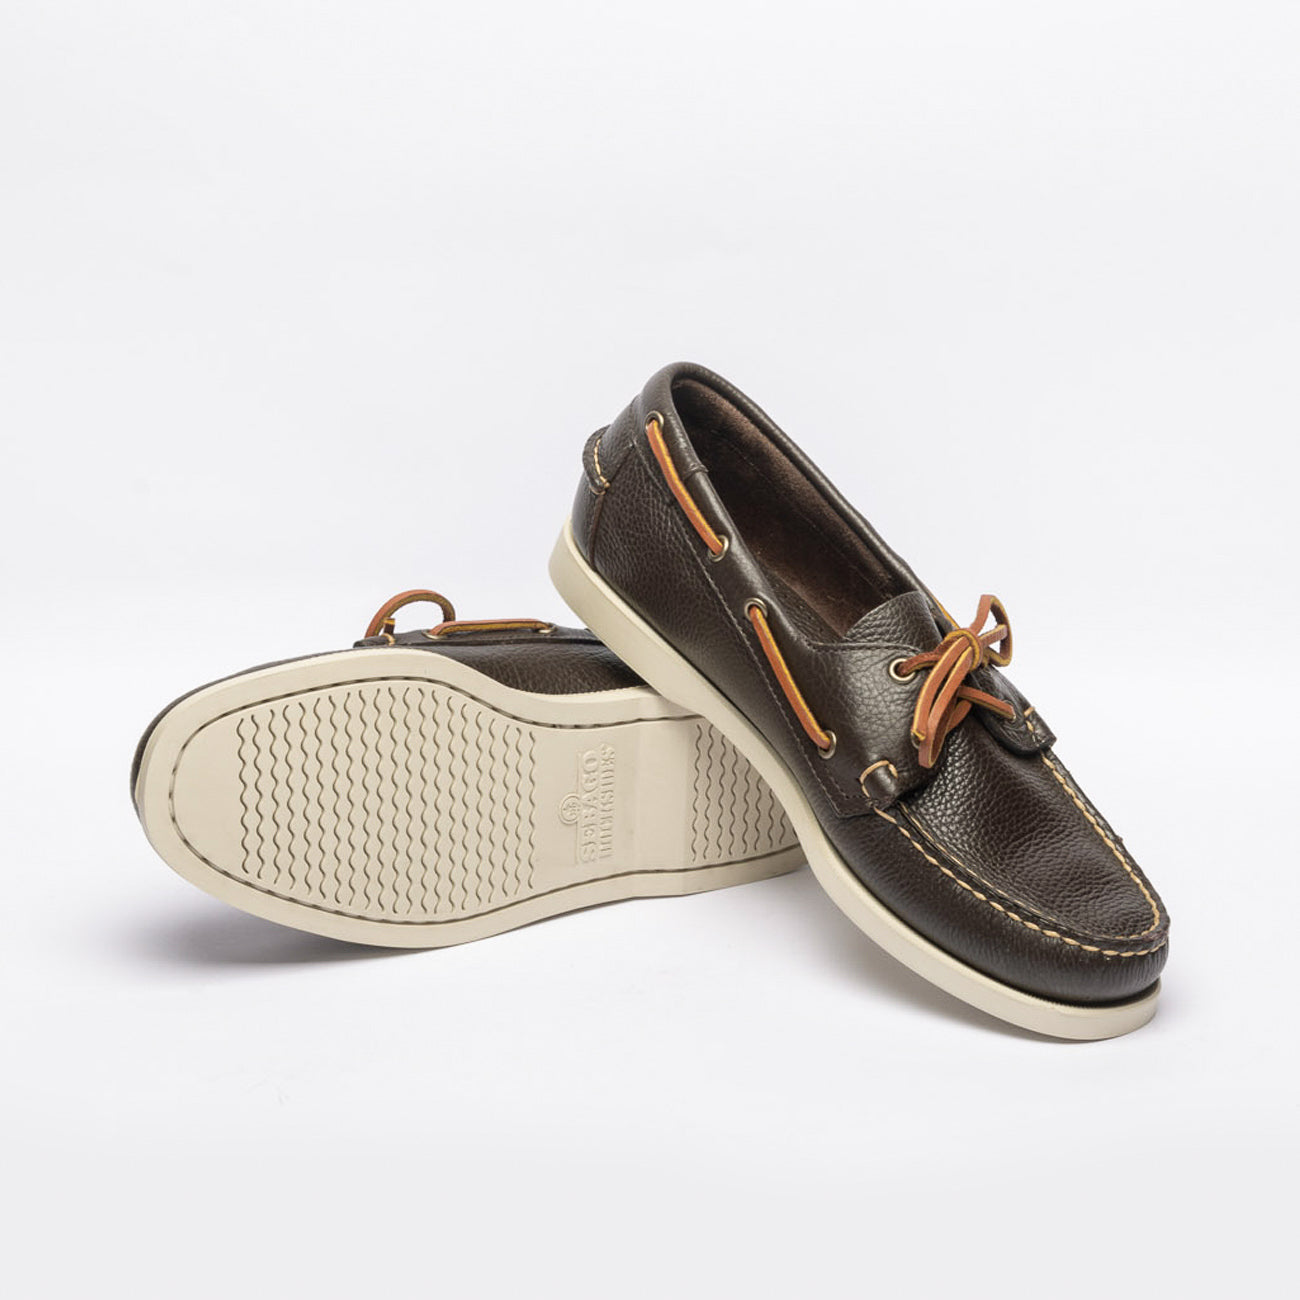 Sebago Portland Martellato brown leather boat shoe